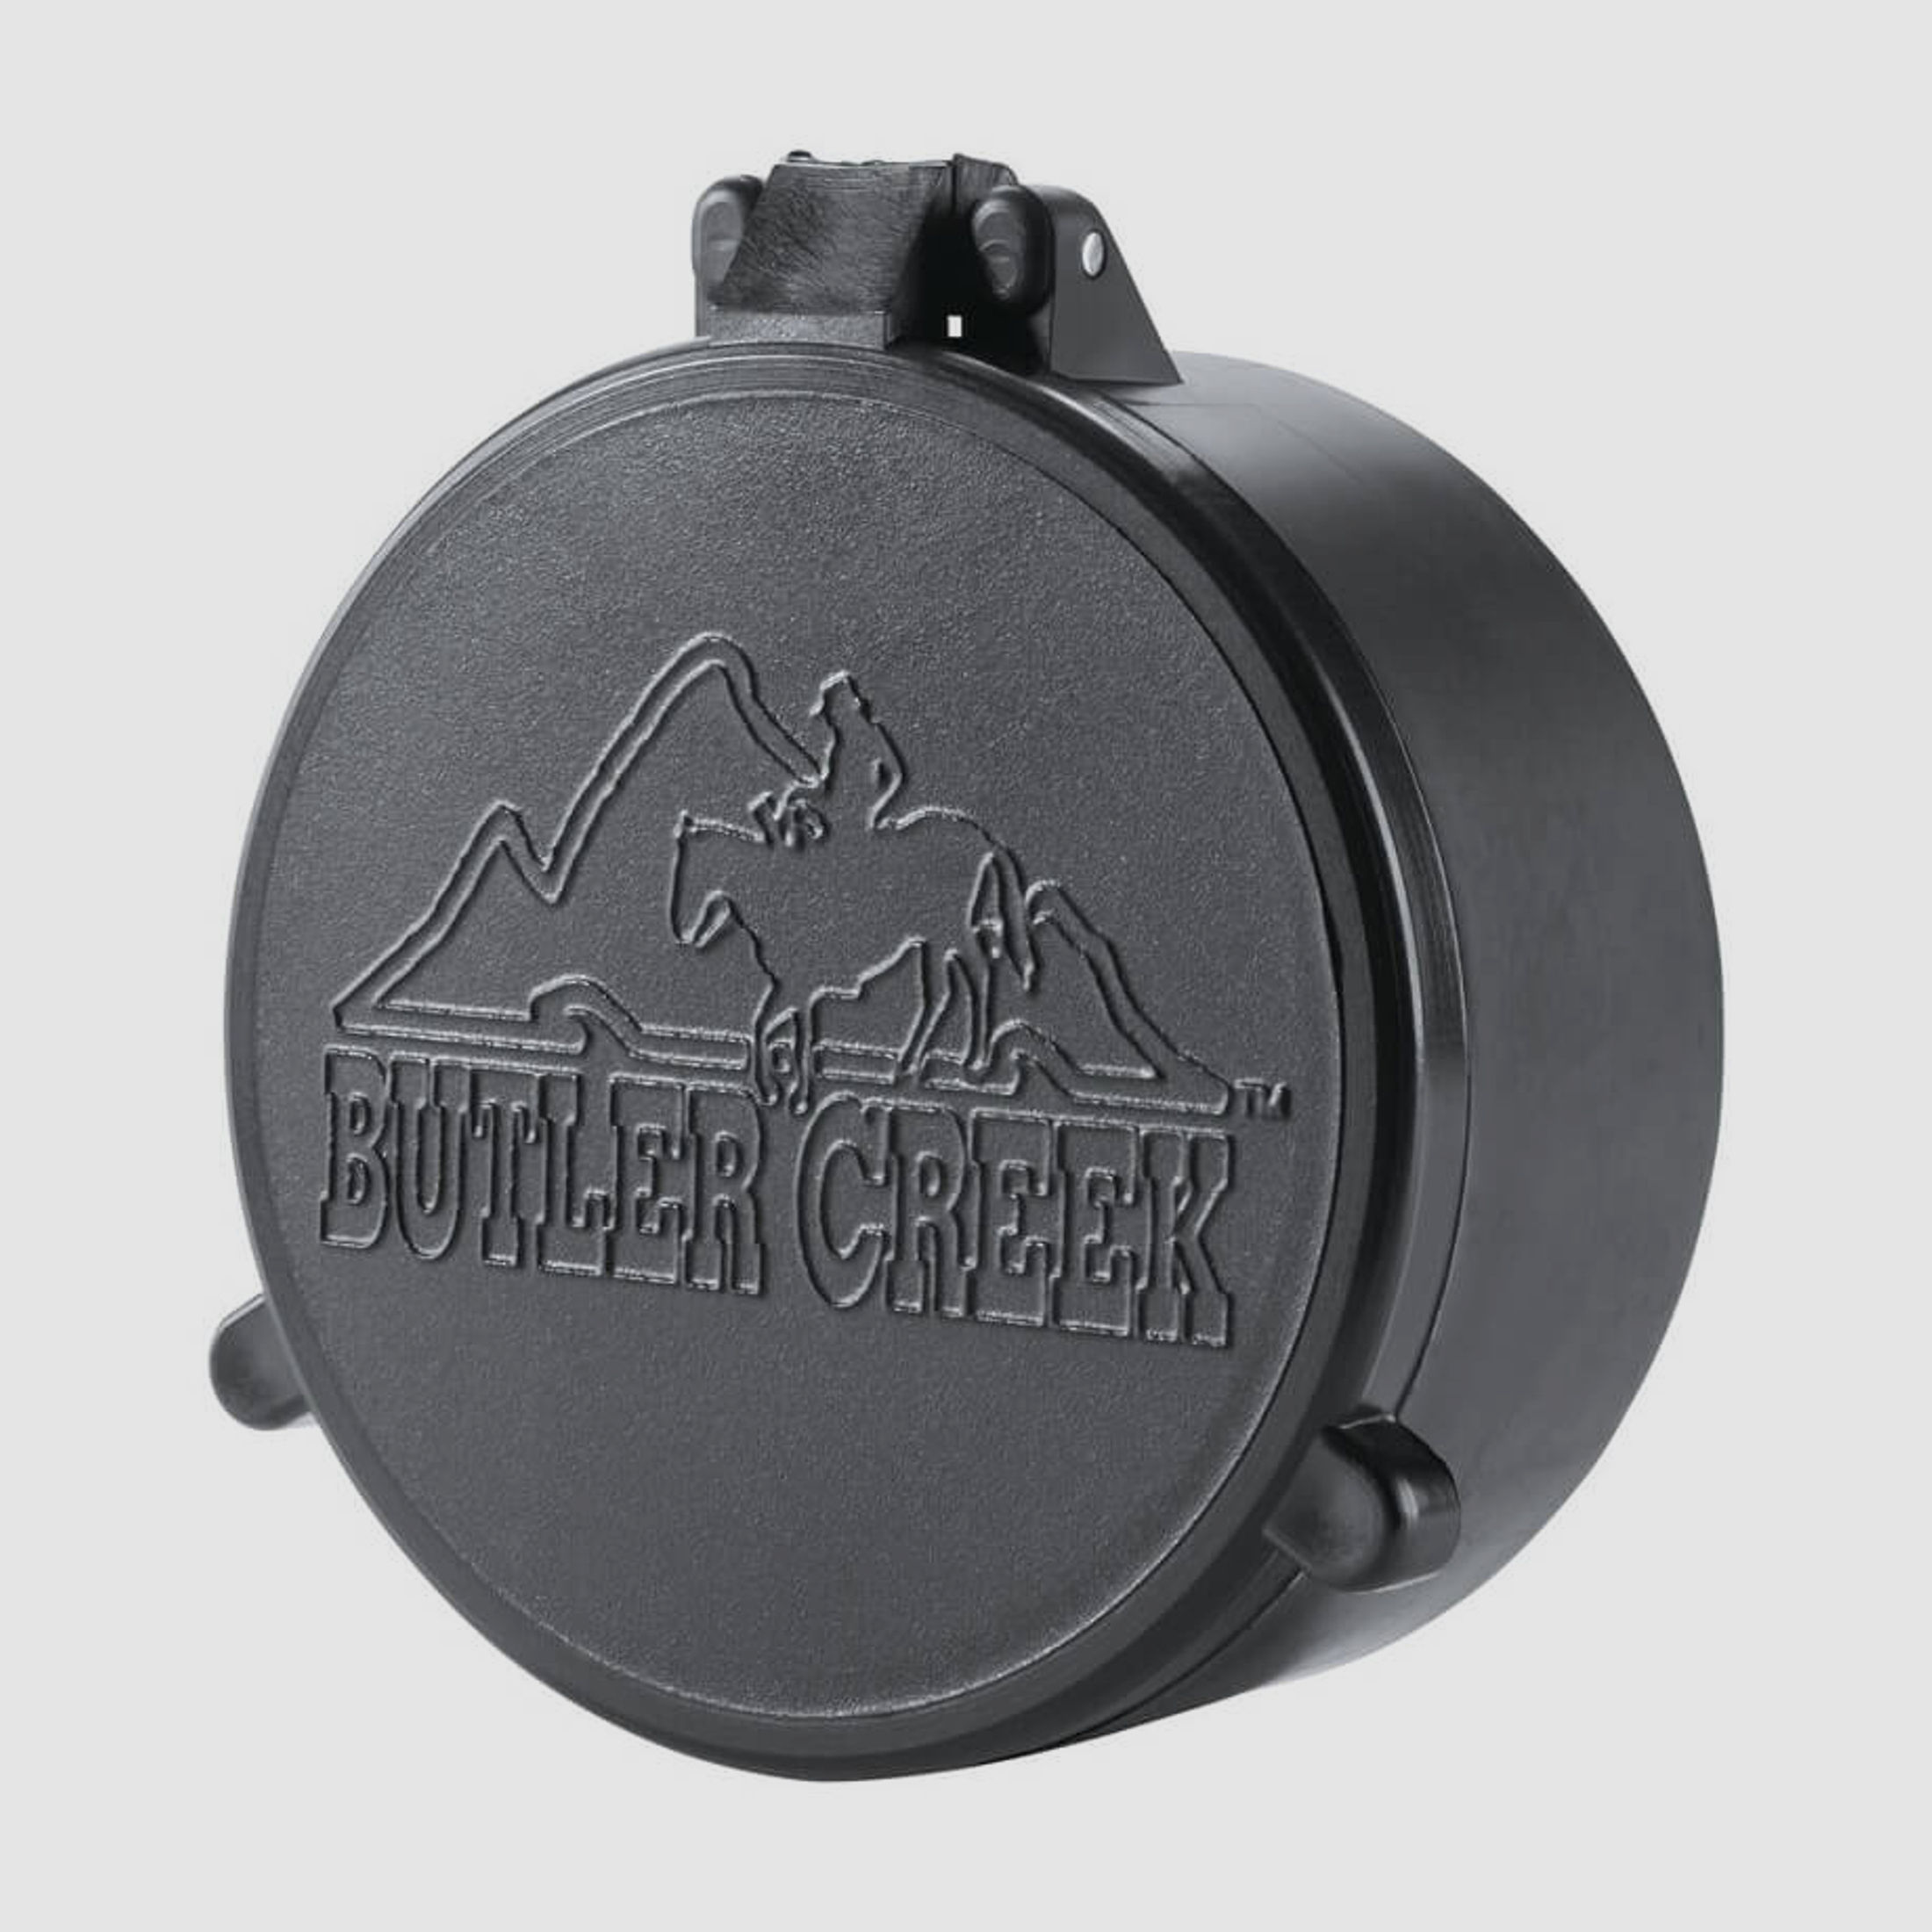 Butler Creek Objektiv Schutzkappe - 50,7mm